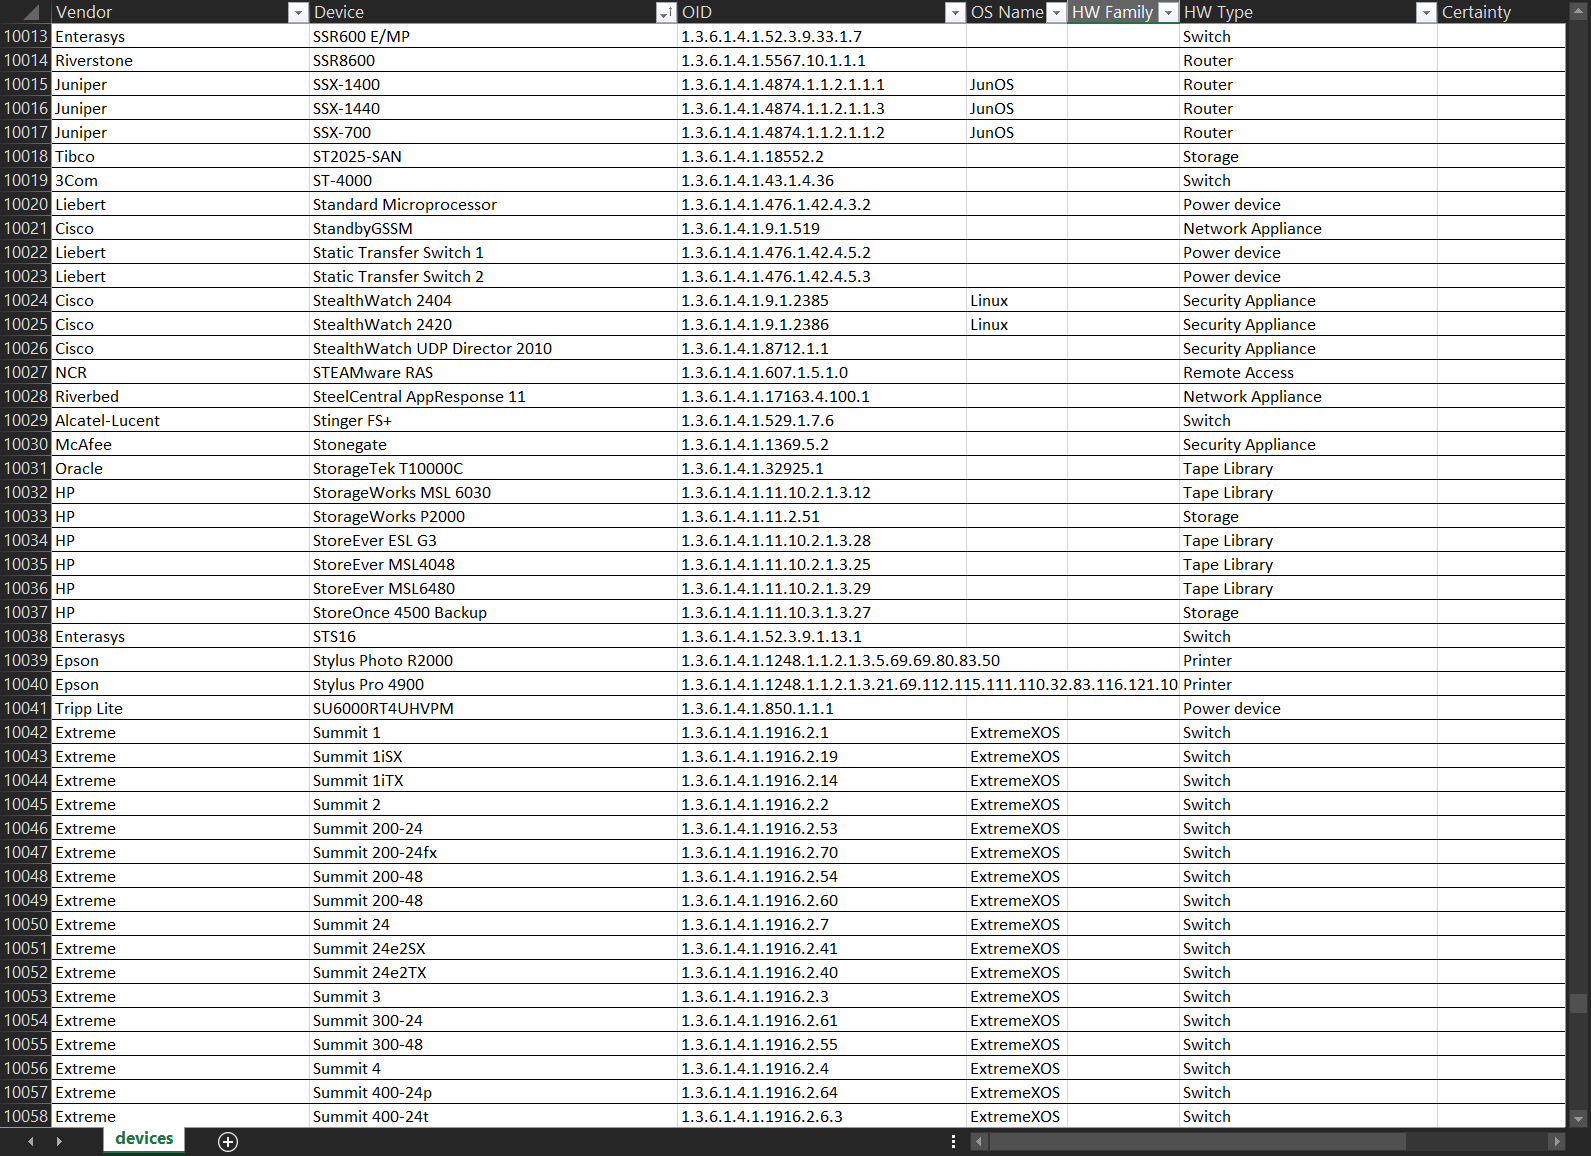 Screenshot of SNMP Fingerprint Data